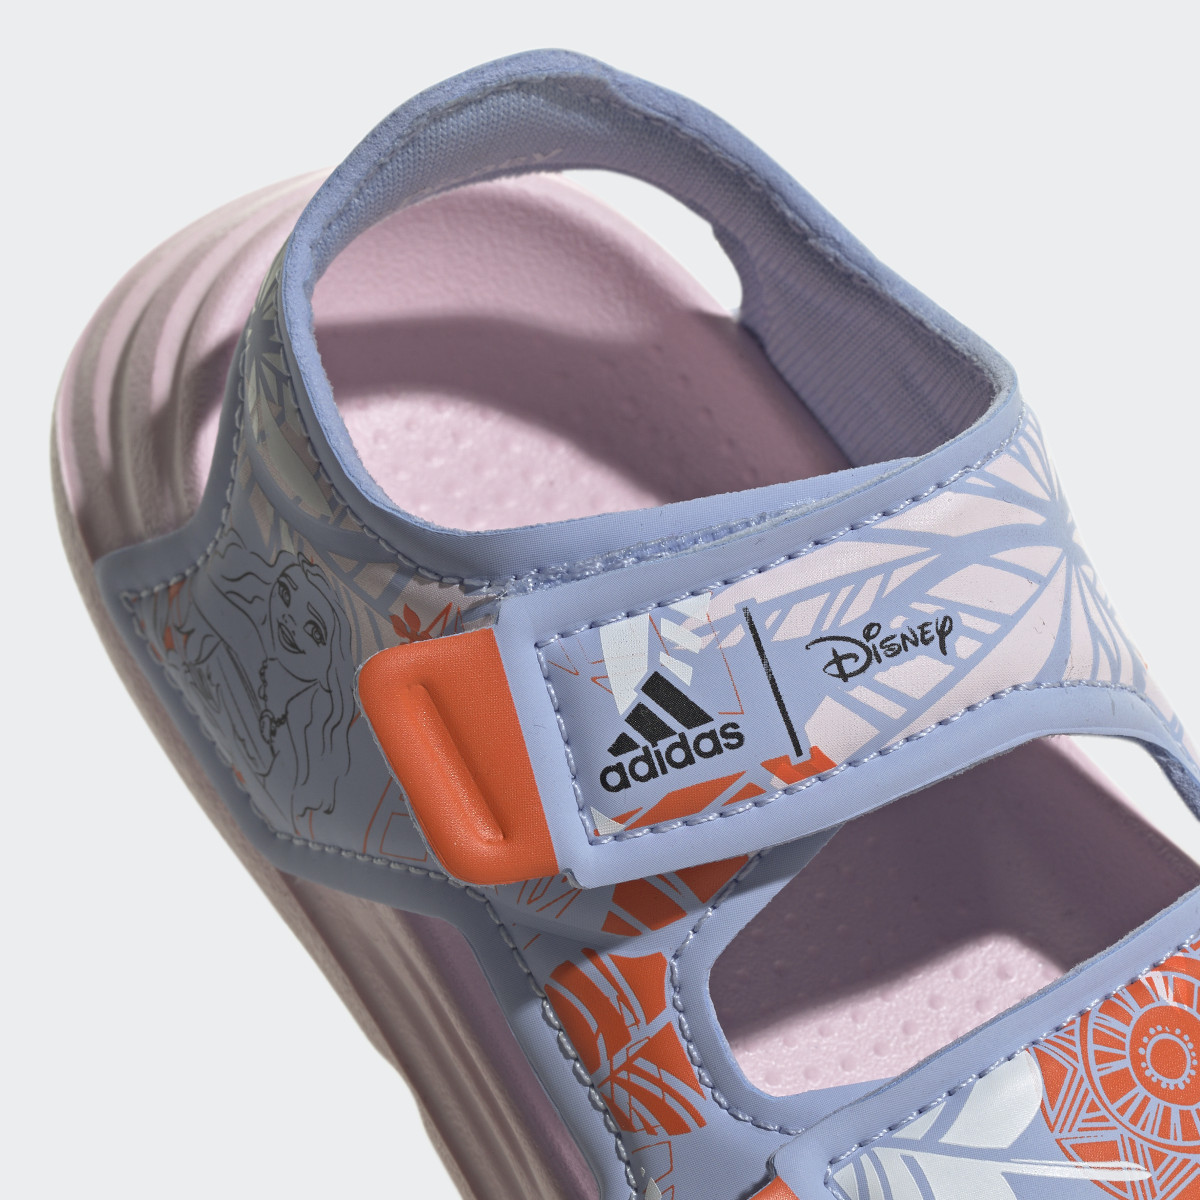 Adidas Sandali adidas x Disney AltaSwim Moana Swim. 9